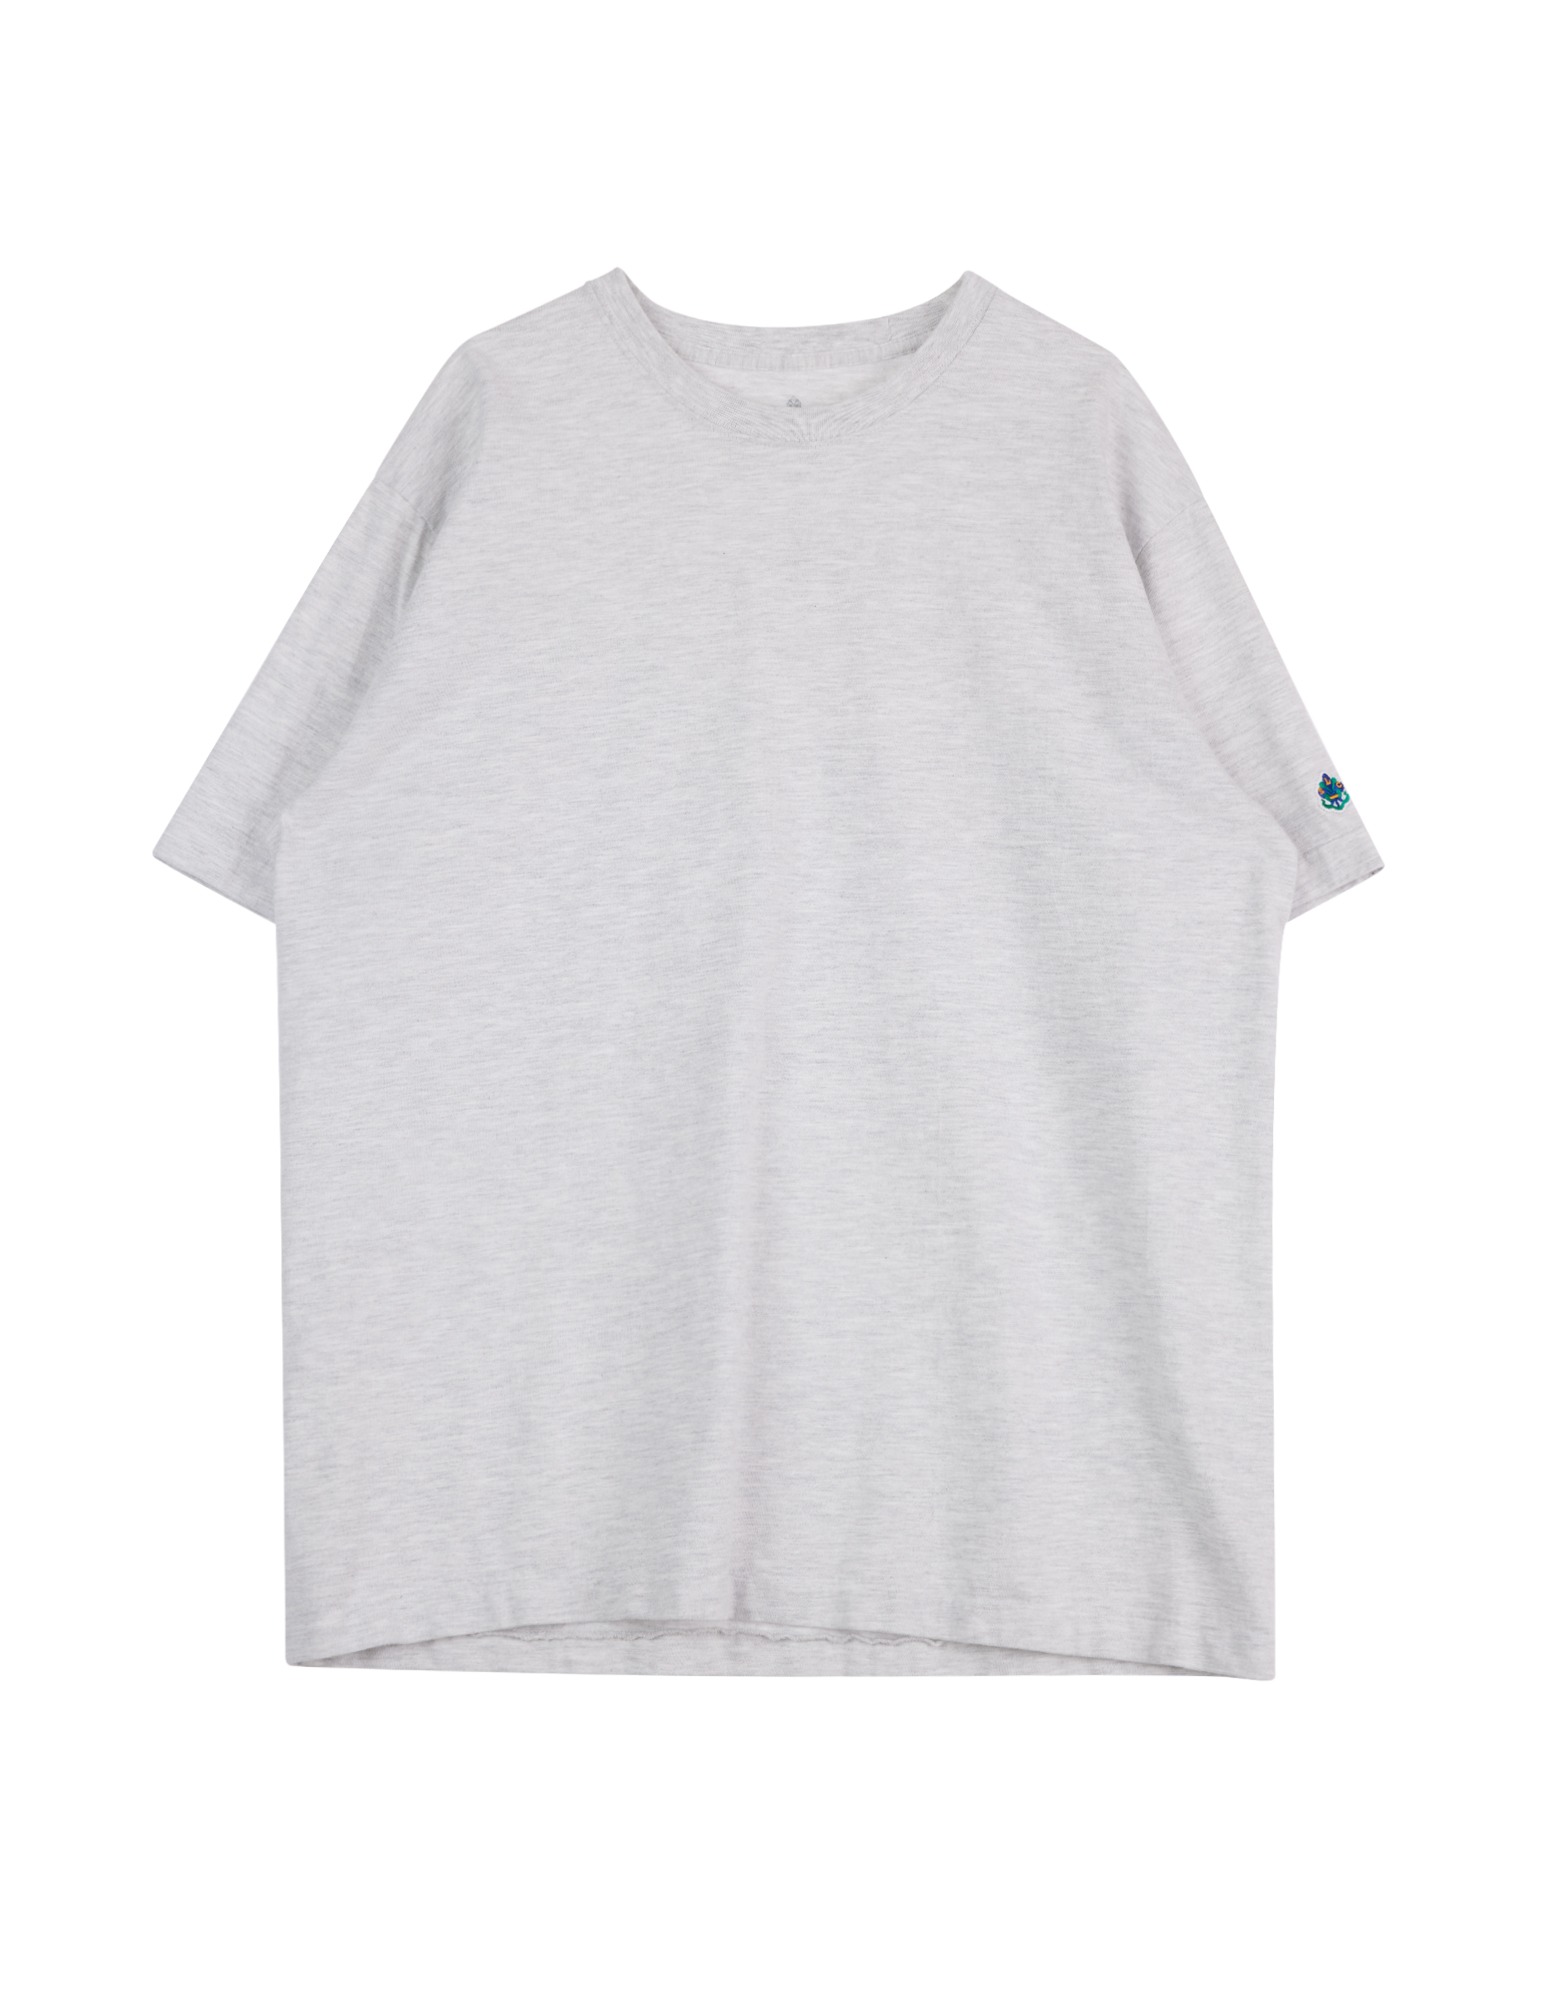 LSC Tubular T Shirt (Grey)